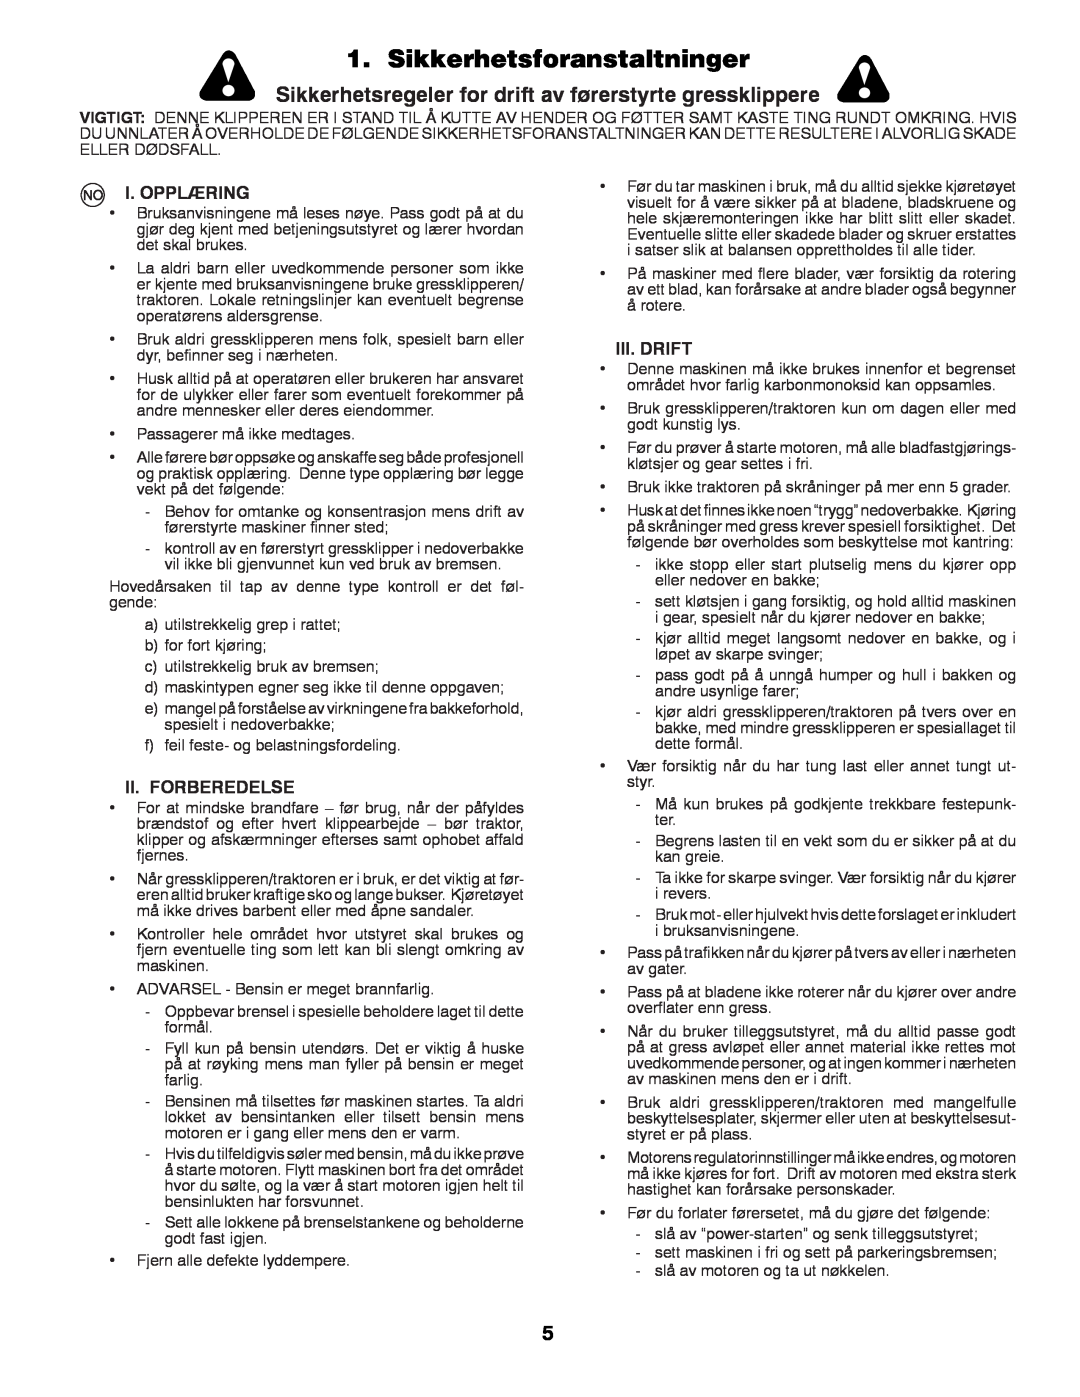 Partner Tech P145107 manual Sikkerhetsforanstaltninger, I. Opplæring, Ii. Forberedelse, Iii.Drift 